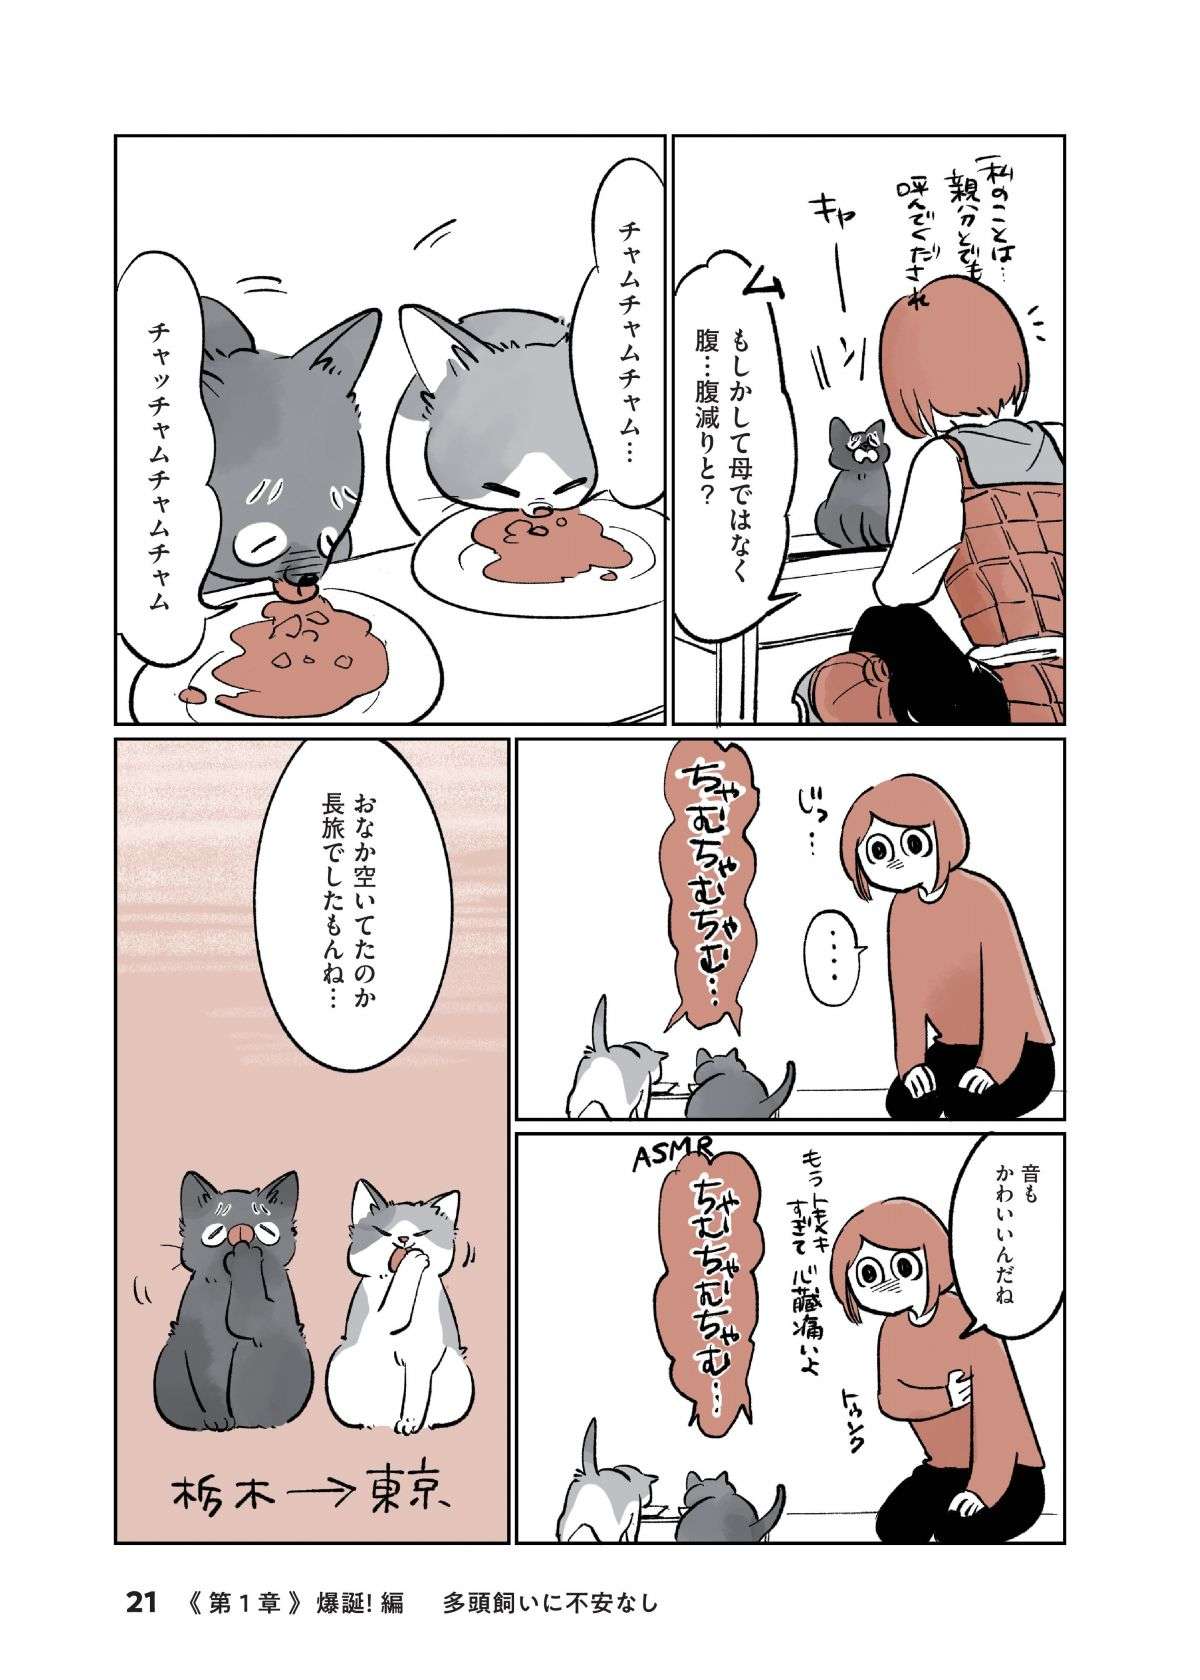 「ちまっ」ヨチヨチ歩く2匹の子猫が我が家に！  不安も吹き飛ぶ「衝撃のかわいさ」／こねこのドレイ koneko_dorei2-6.jpg